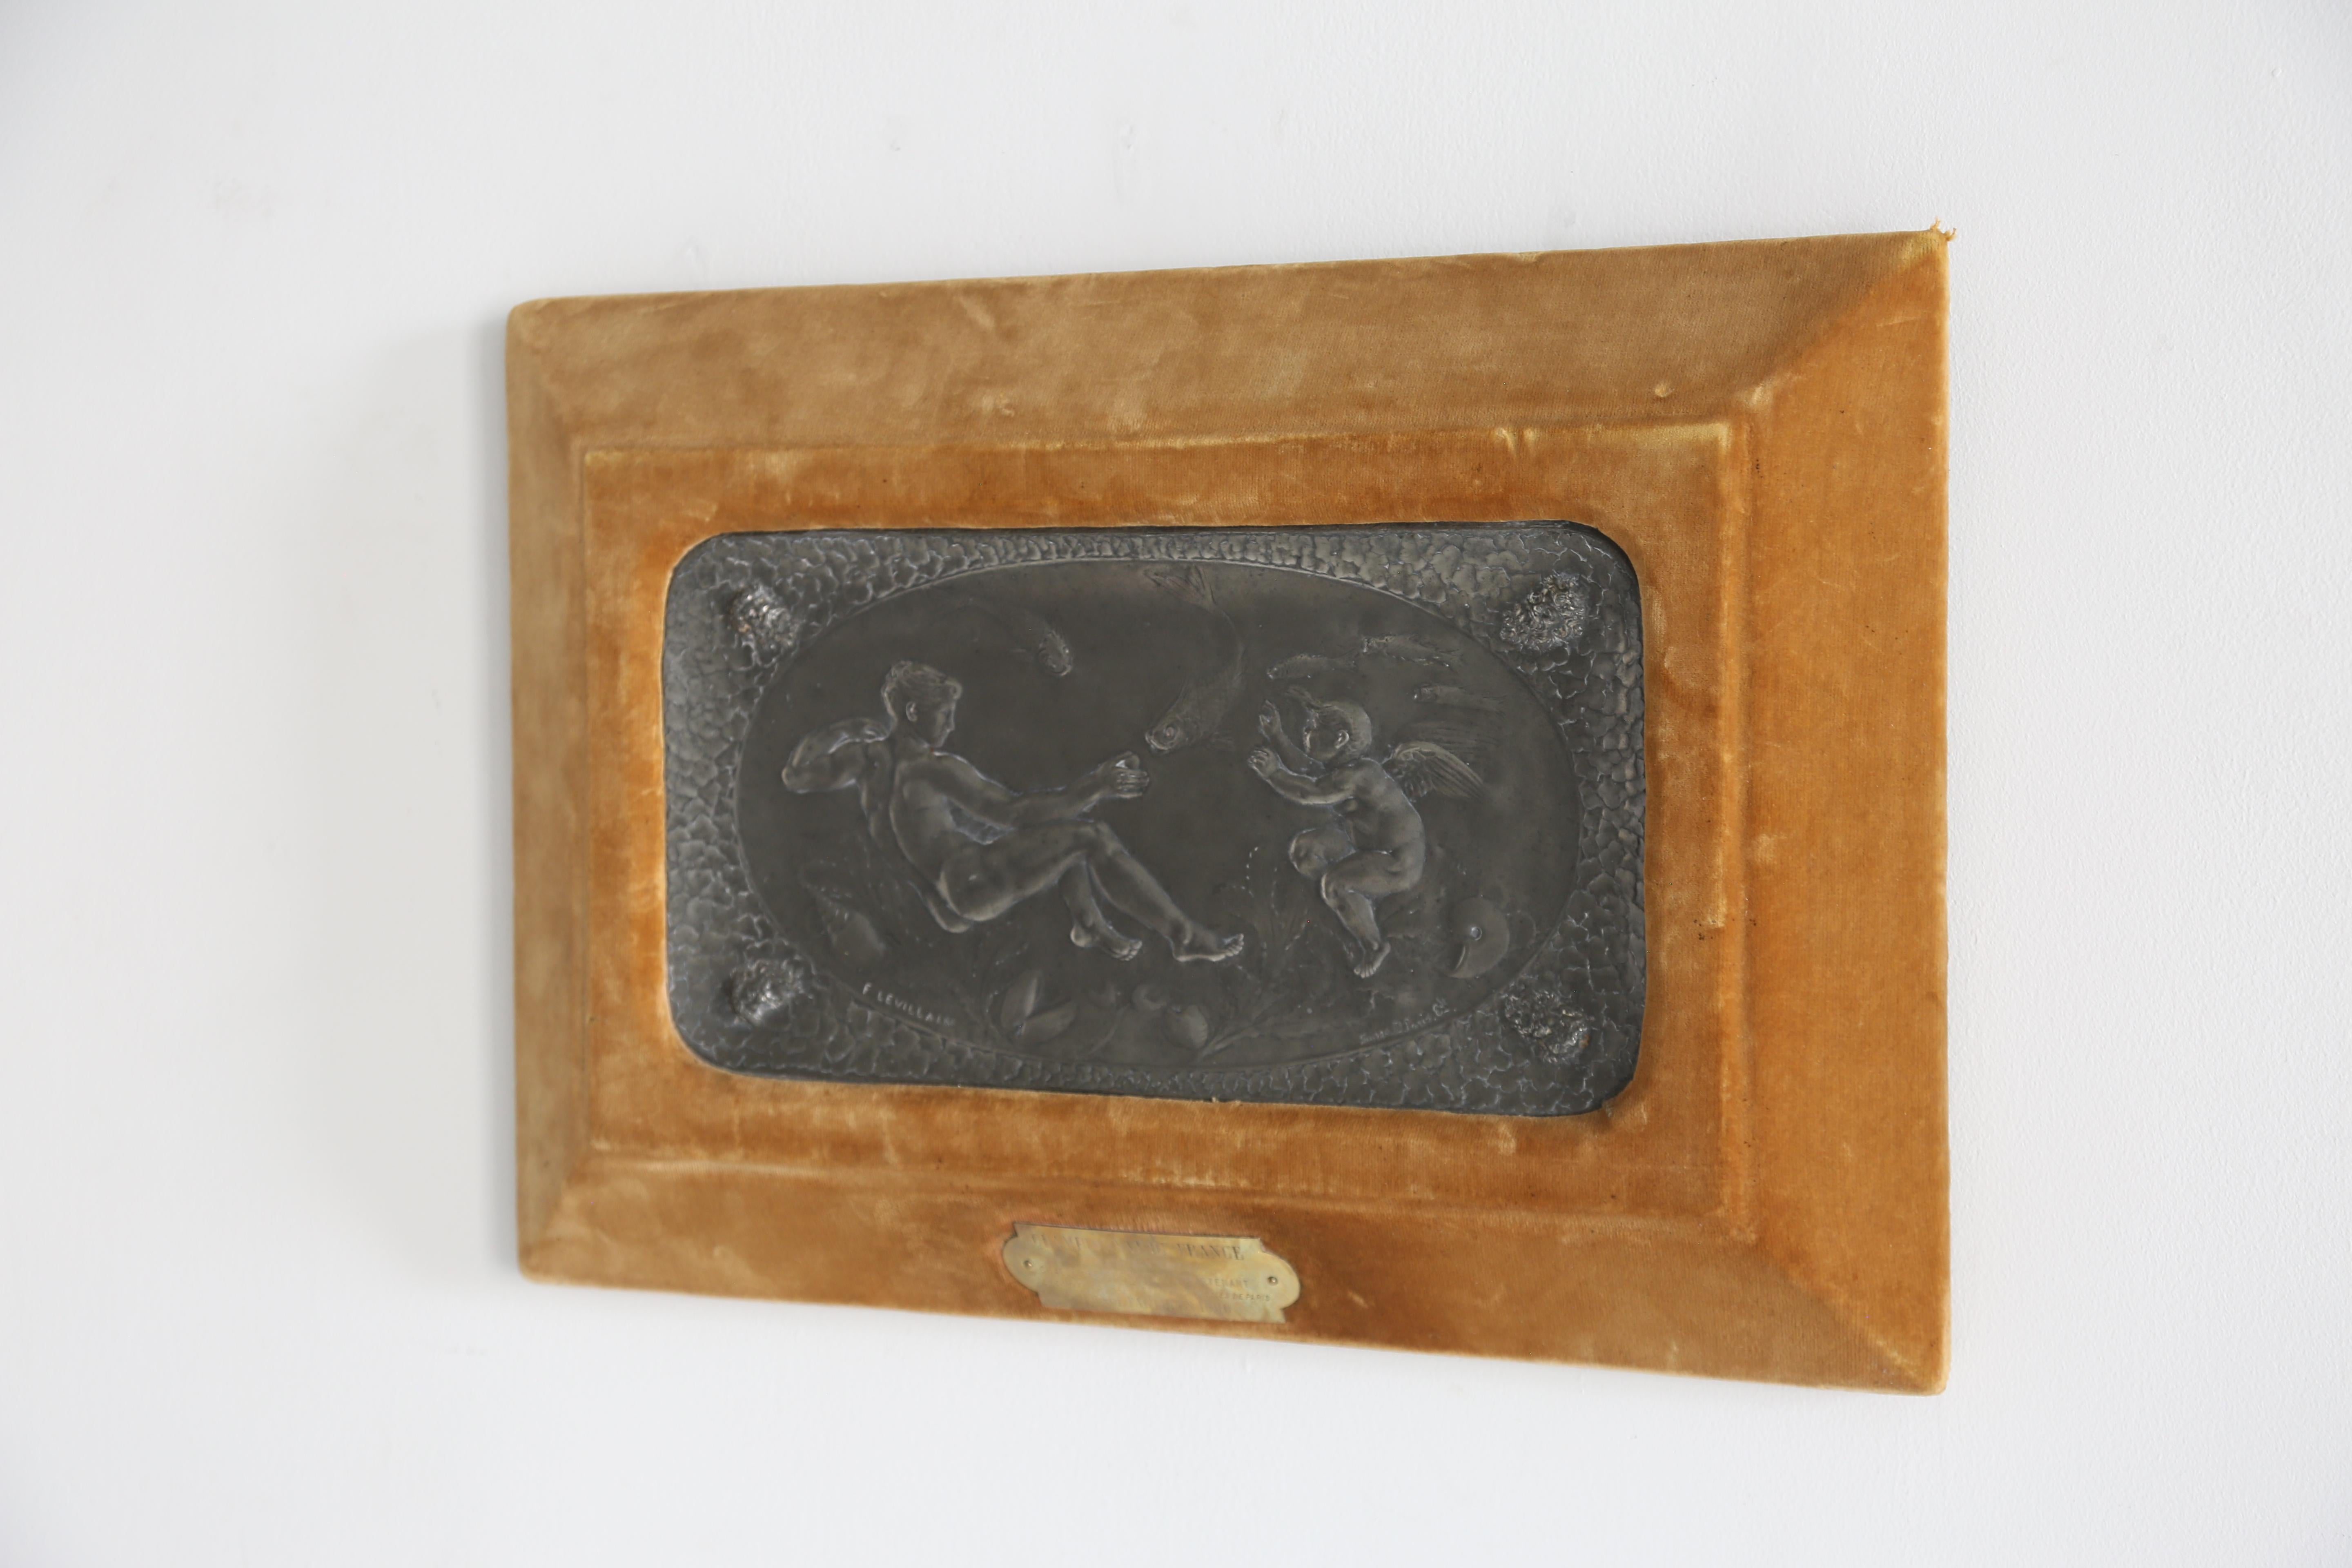 Eine Wandtafel aus Pariser Silber mit Flachrelief, eingefasst in hochwertigem Samt.

Möglicherweise eine Sportlerehrung auf Wasserbasis, datiert 